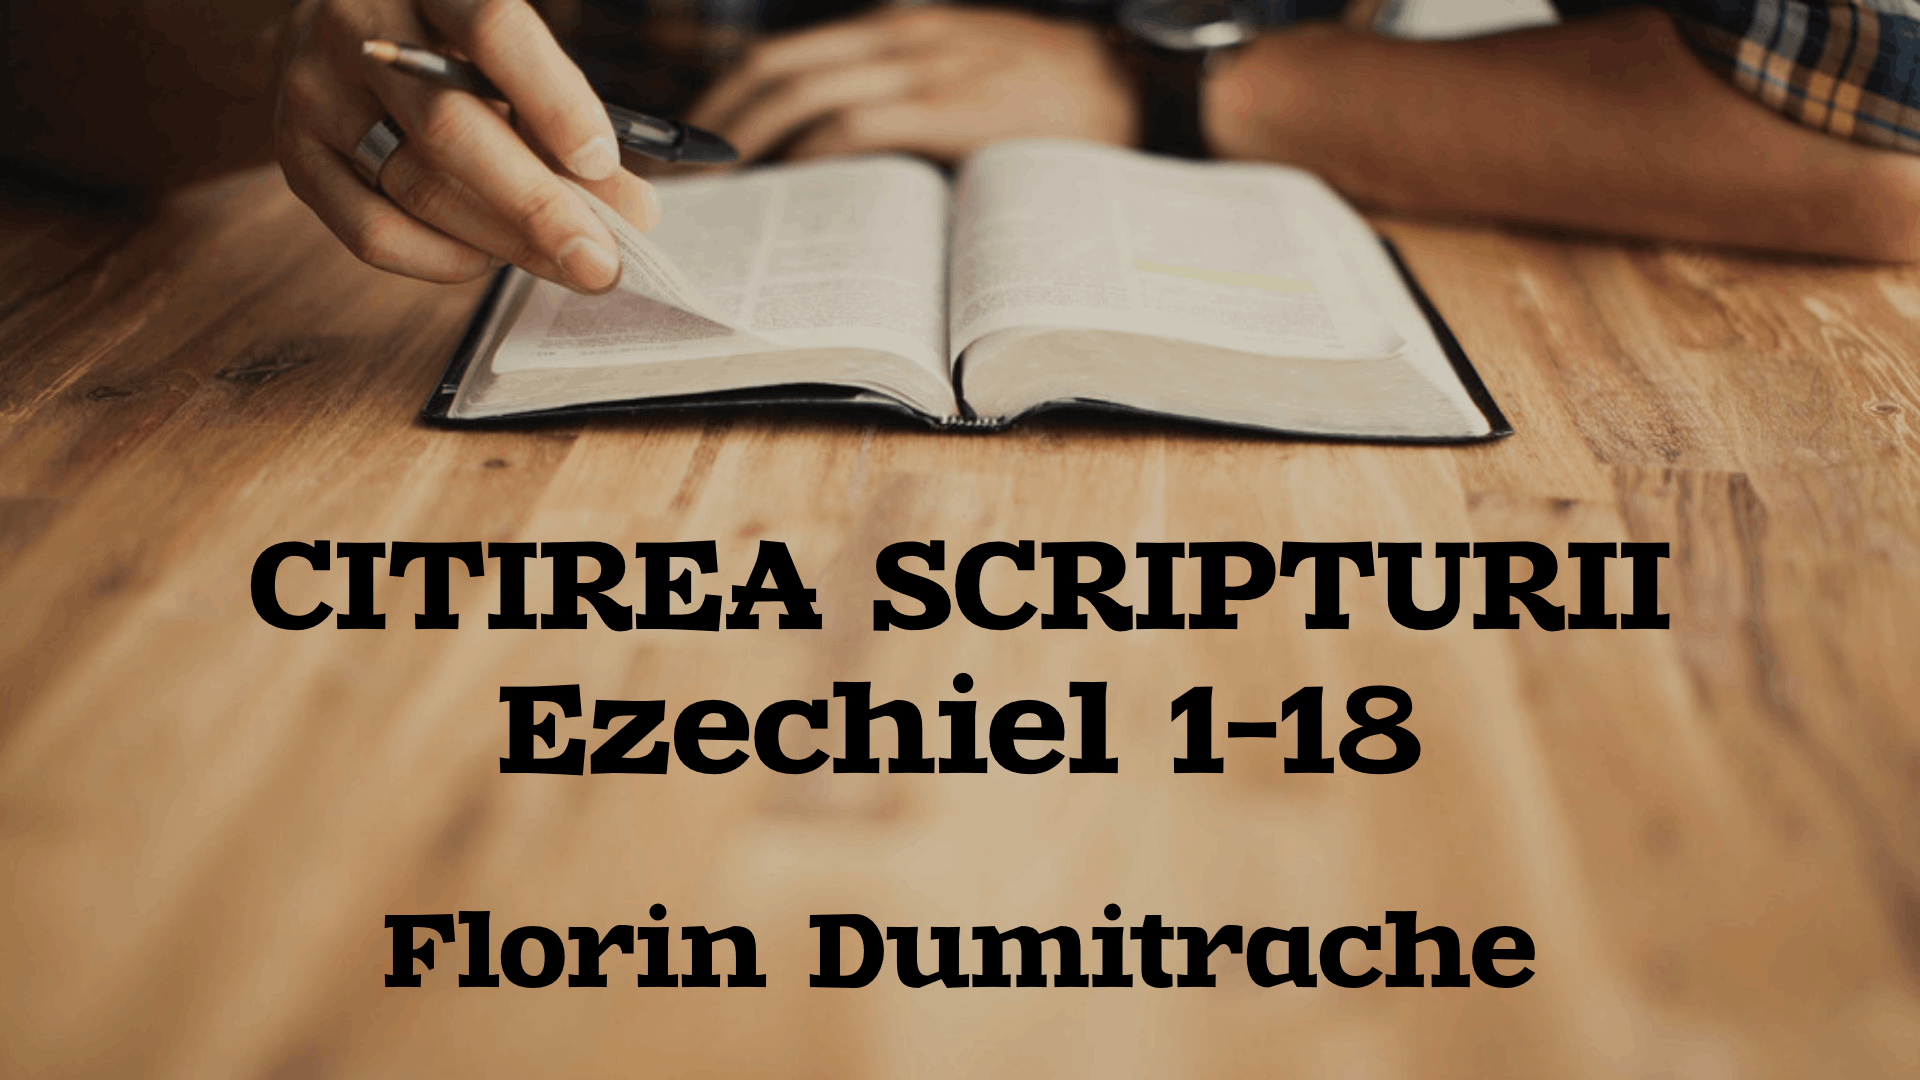 Citirea Scripturii - Ezechiel 1-18 - Florin Dumitrache